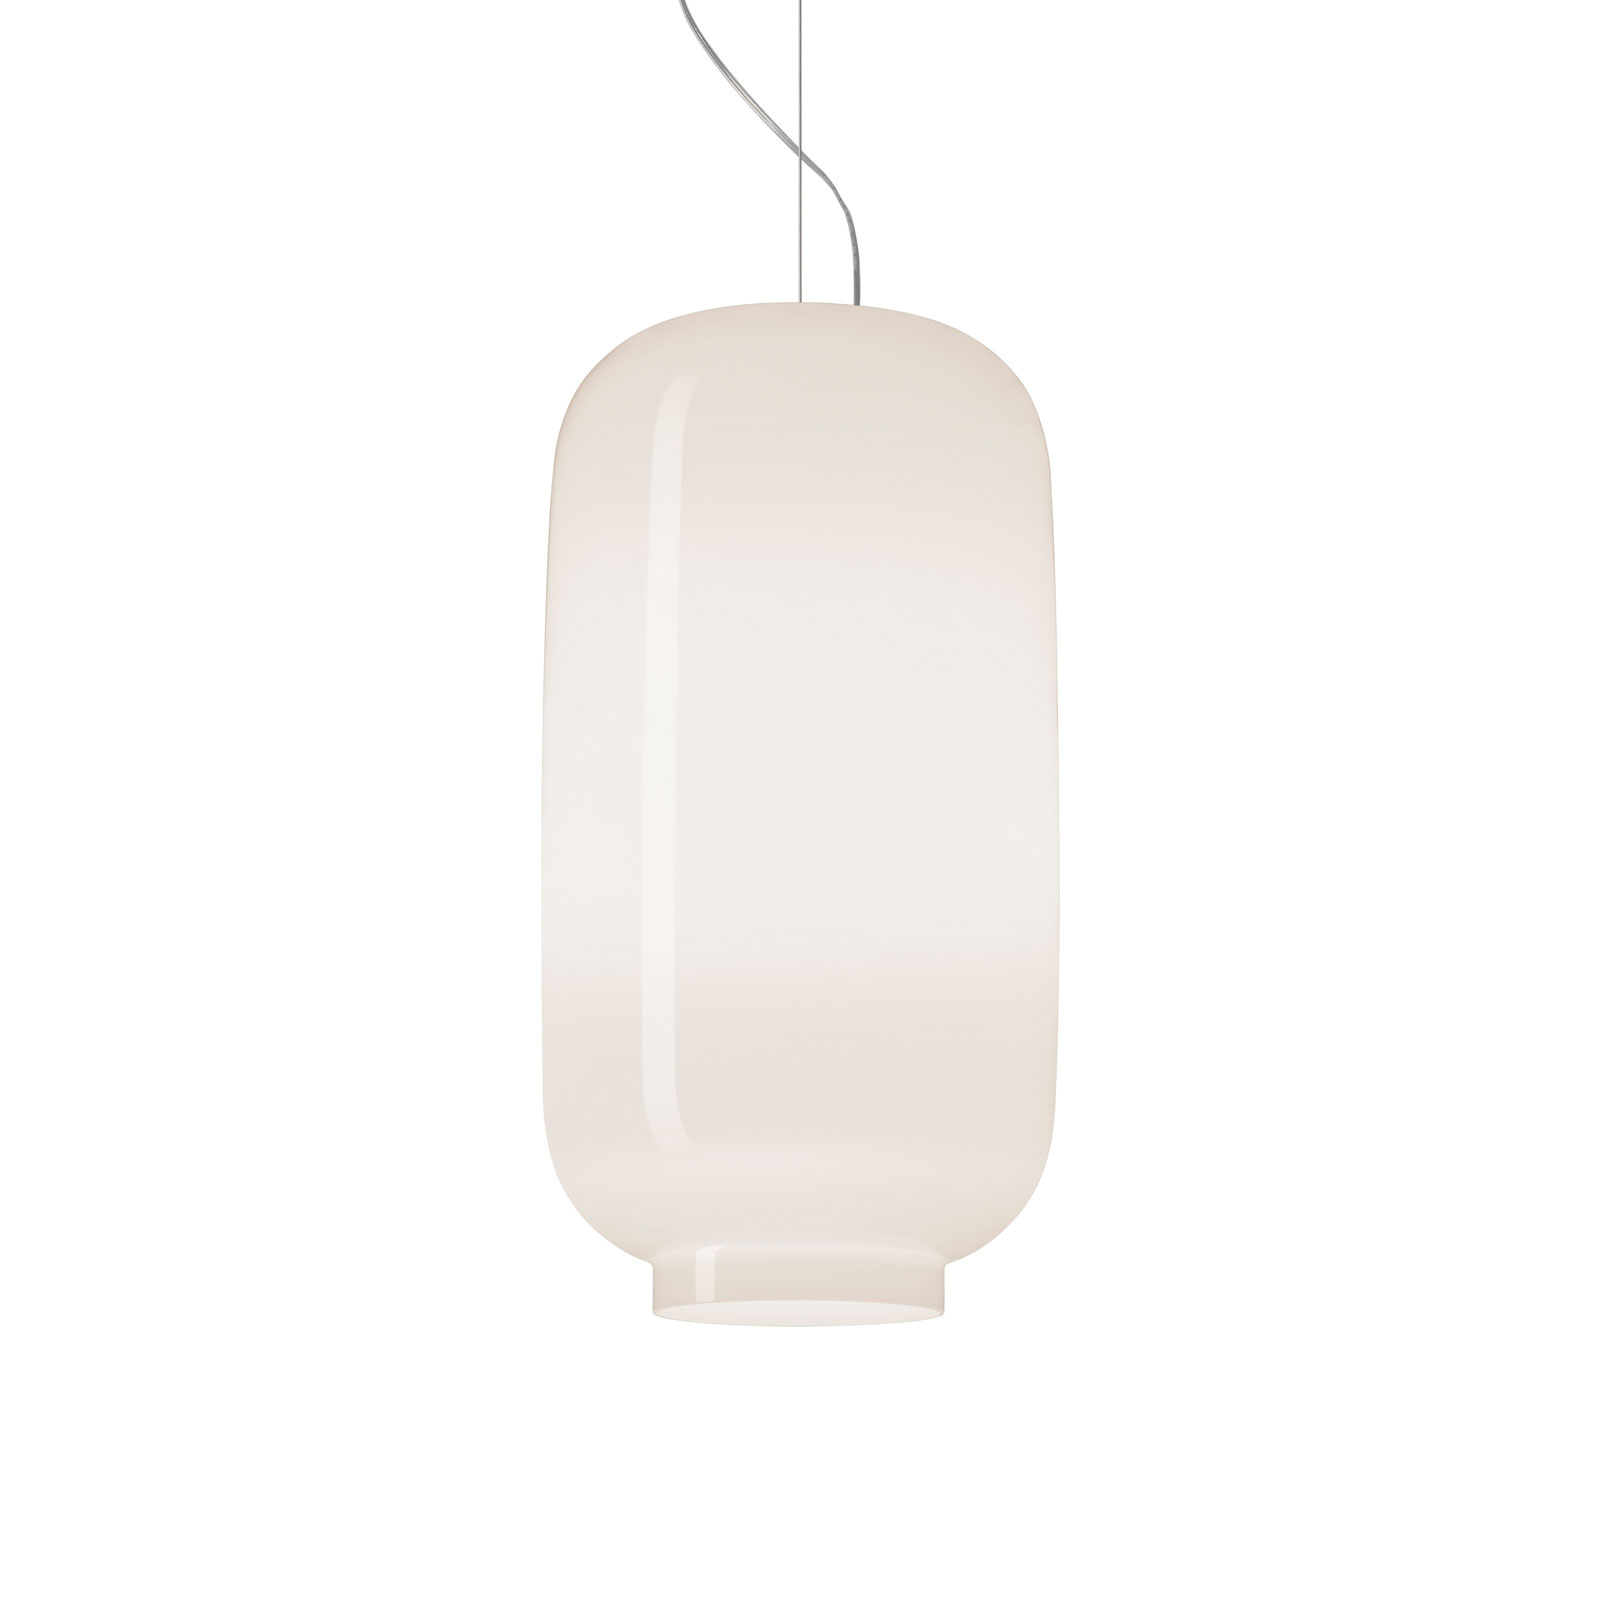 Foscarini Chouchin Bianco 2 MyLight LED hanging